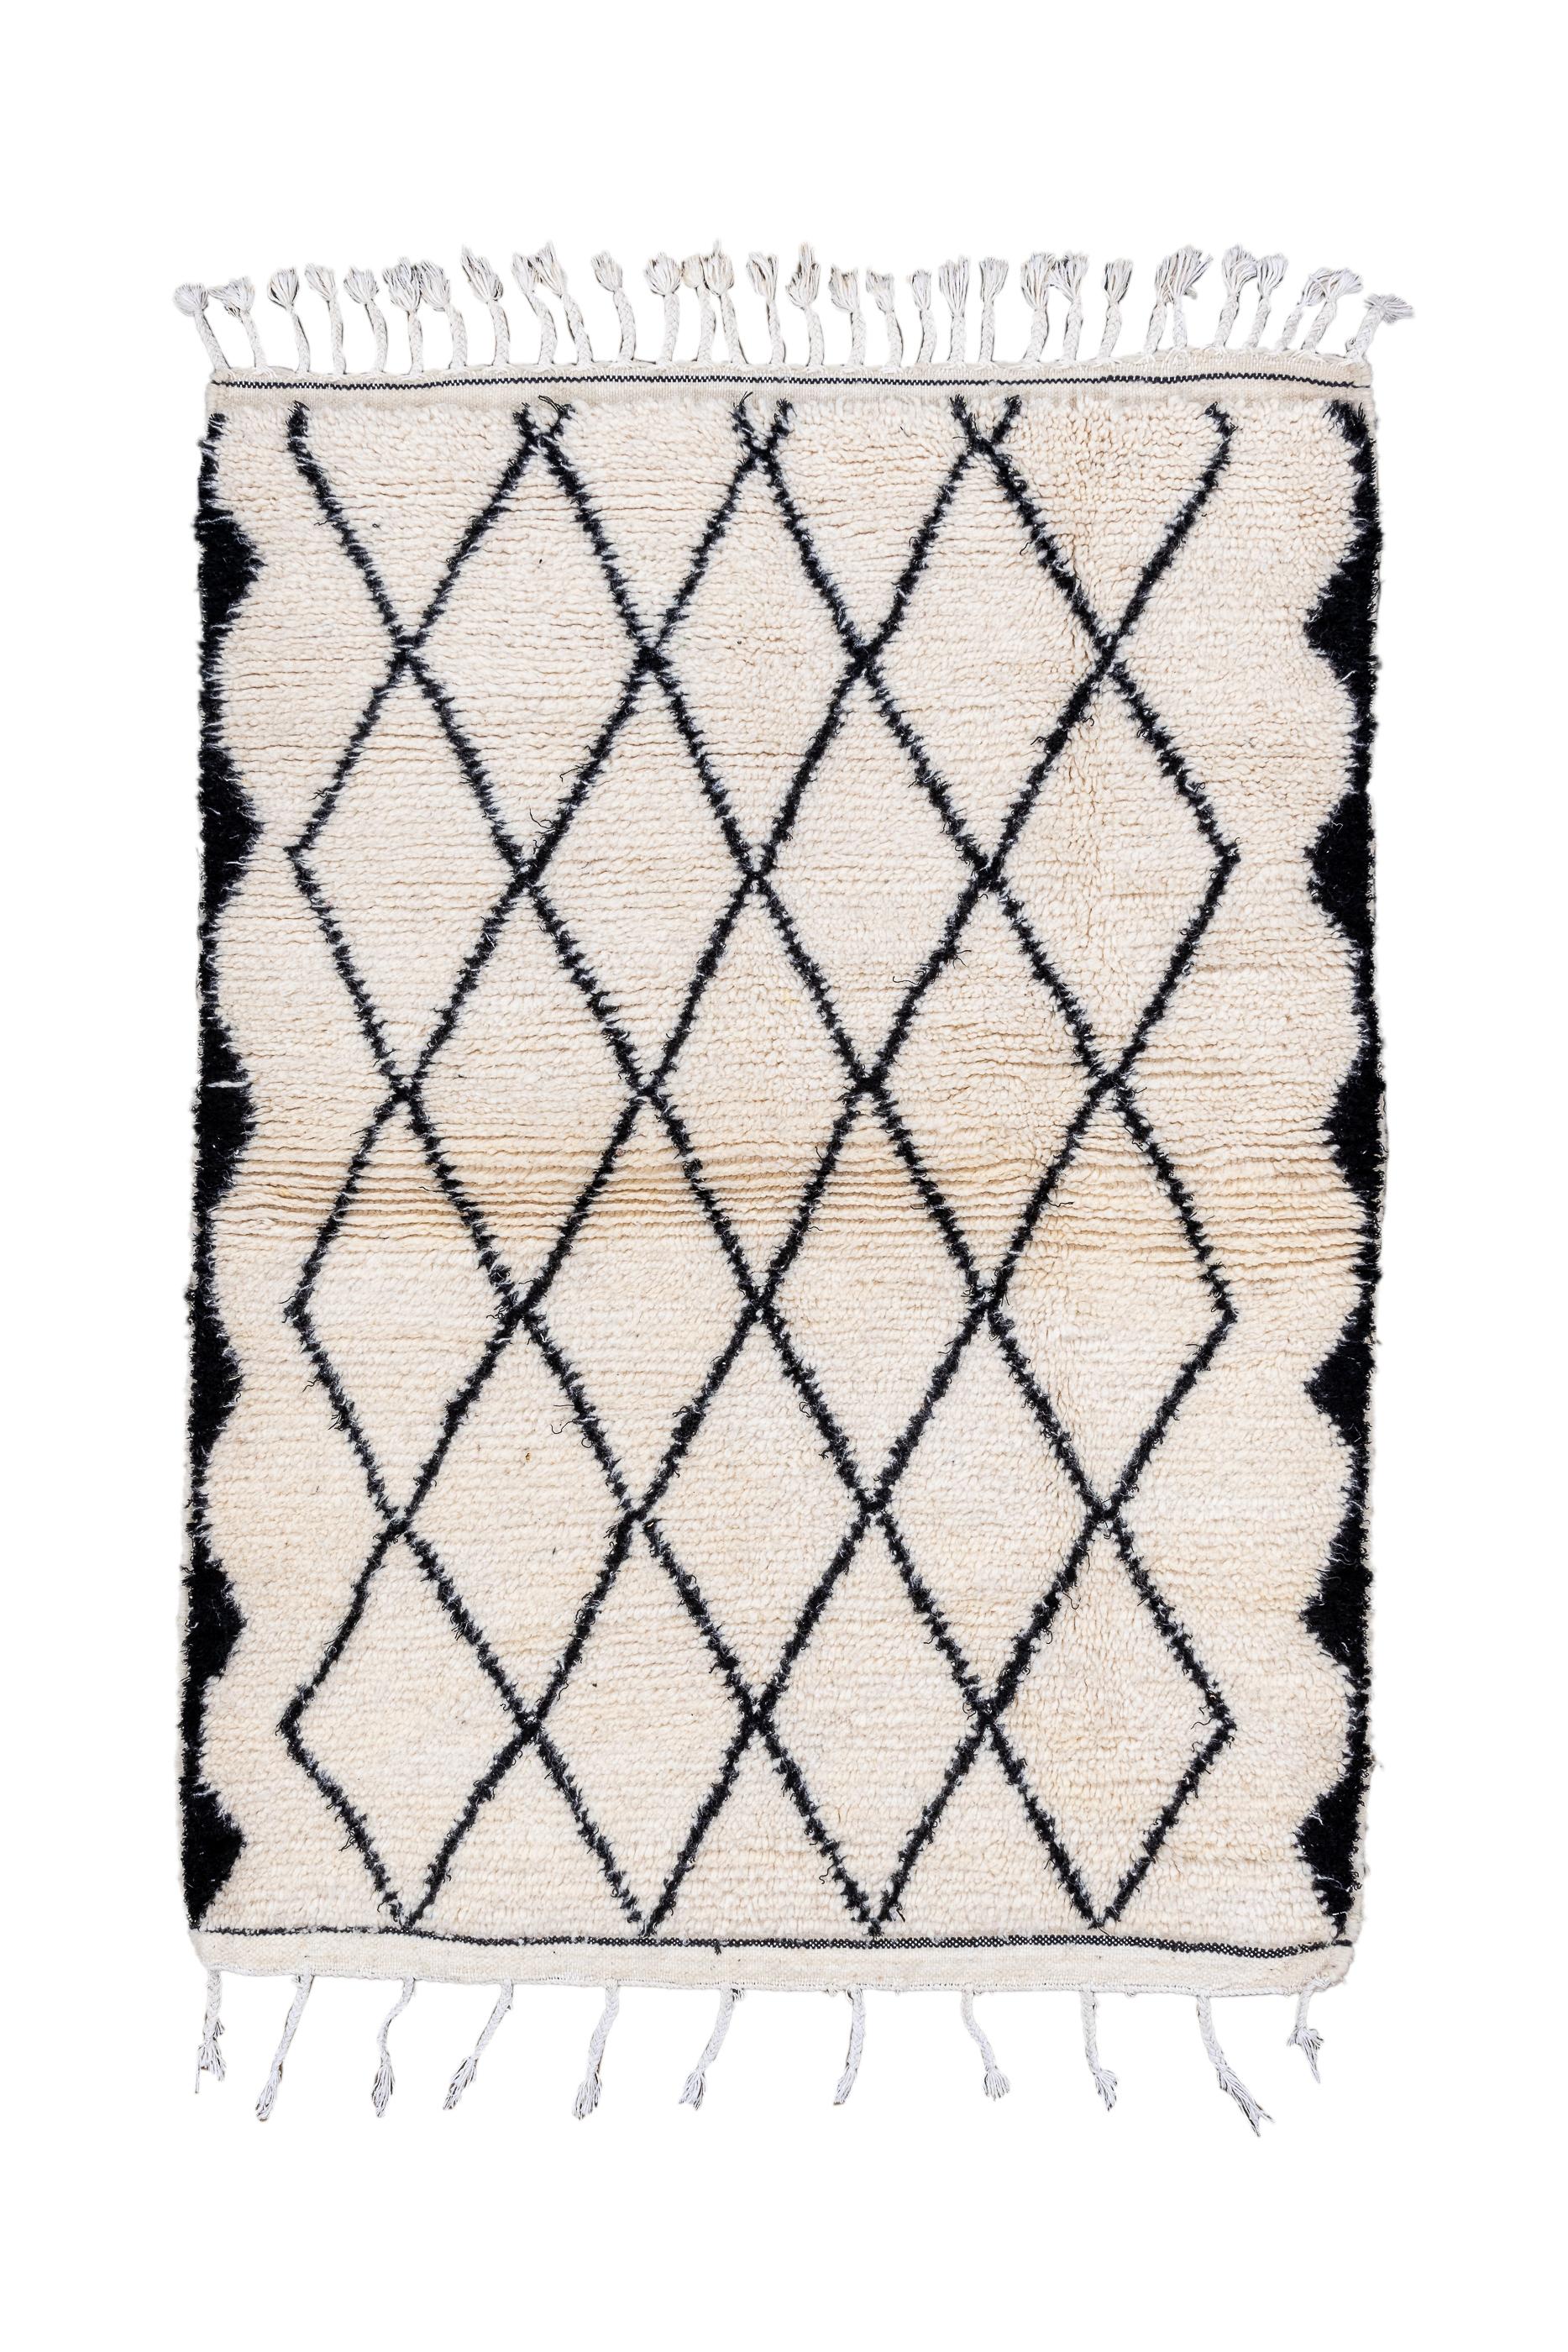 Marokkanische Weber lieben Rauten, wie hier mit einem durchgehenden Holzkohlegitter auf cremefarbener Naturwolle gezeigt. Die seitliche Umrandung aus Holzkohle besteht aus abgeflachten, unregelmäßigen Dreieckslinien. Weit auseinander liegende